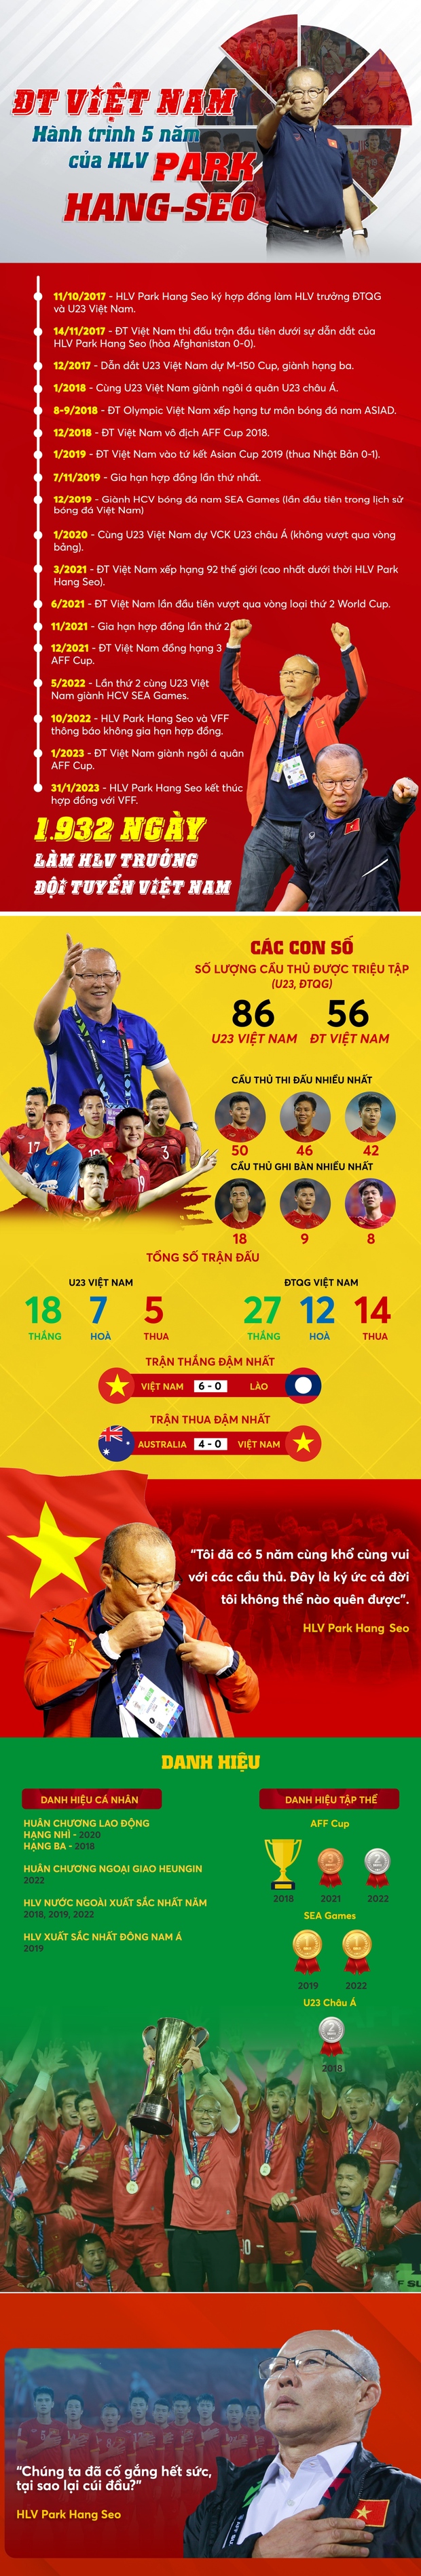 Infographic: Nhìn lại 5 năm khó quên của HLV Park Hang Seo cùng bóng đá Việt Nam - Ảnh 1.